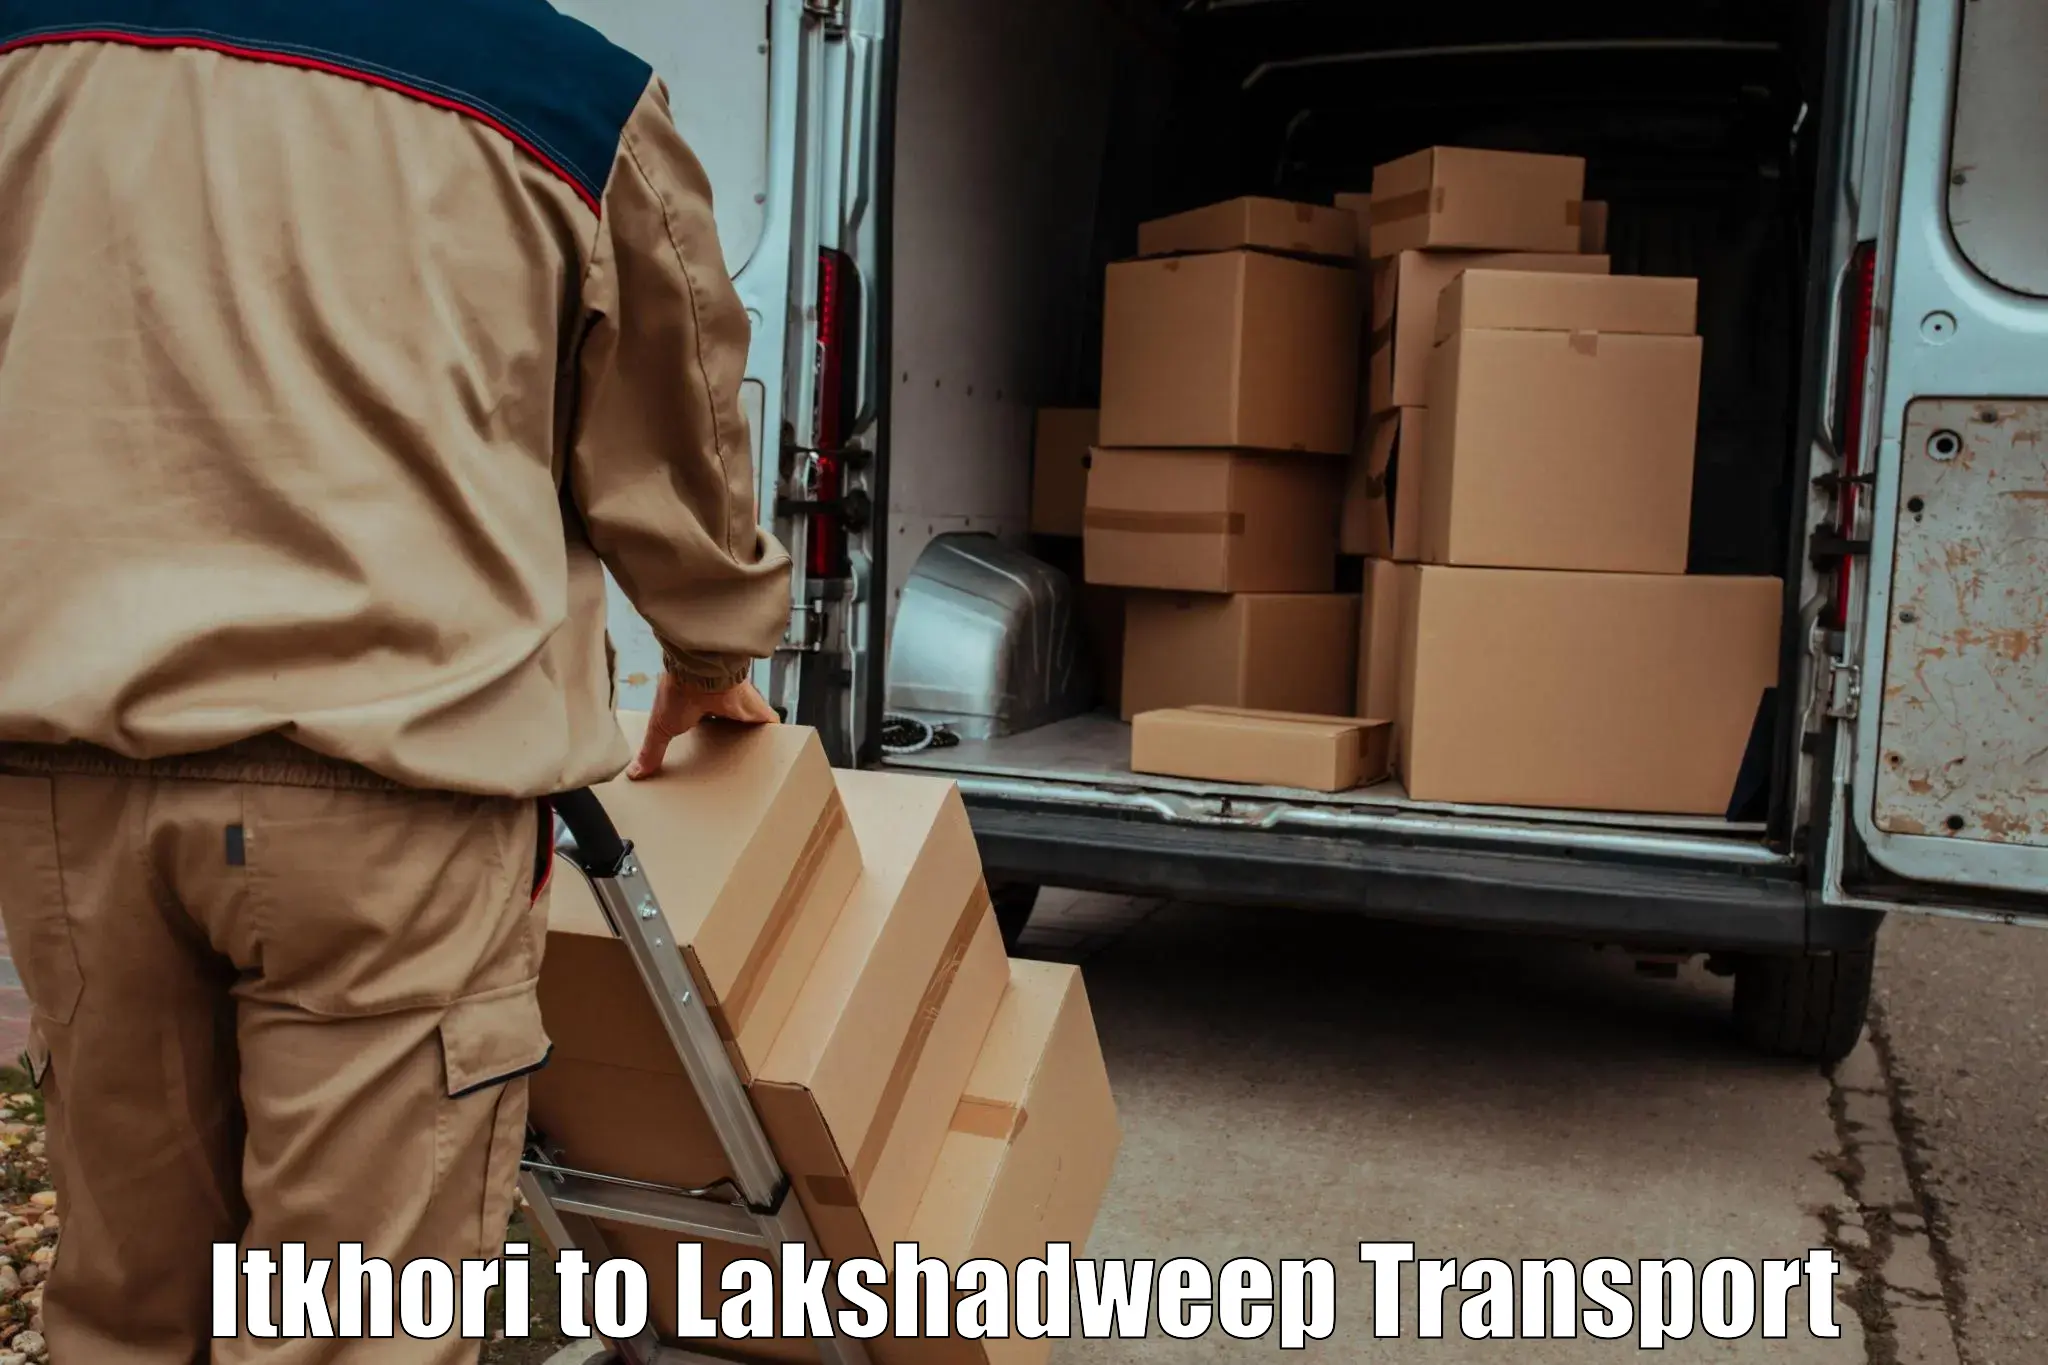 Land transport services Itkhori to Lakshadweep